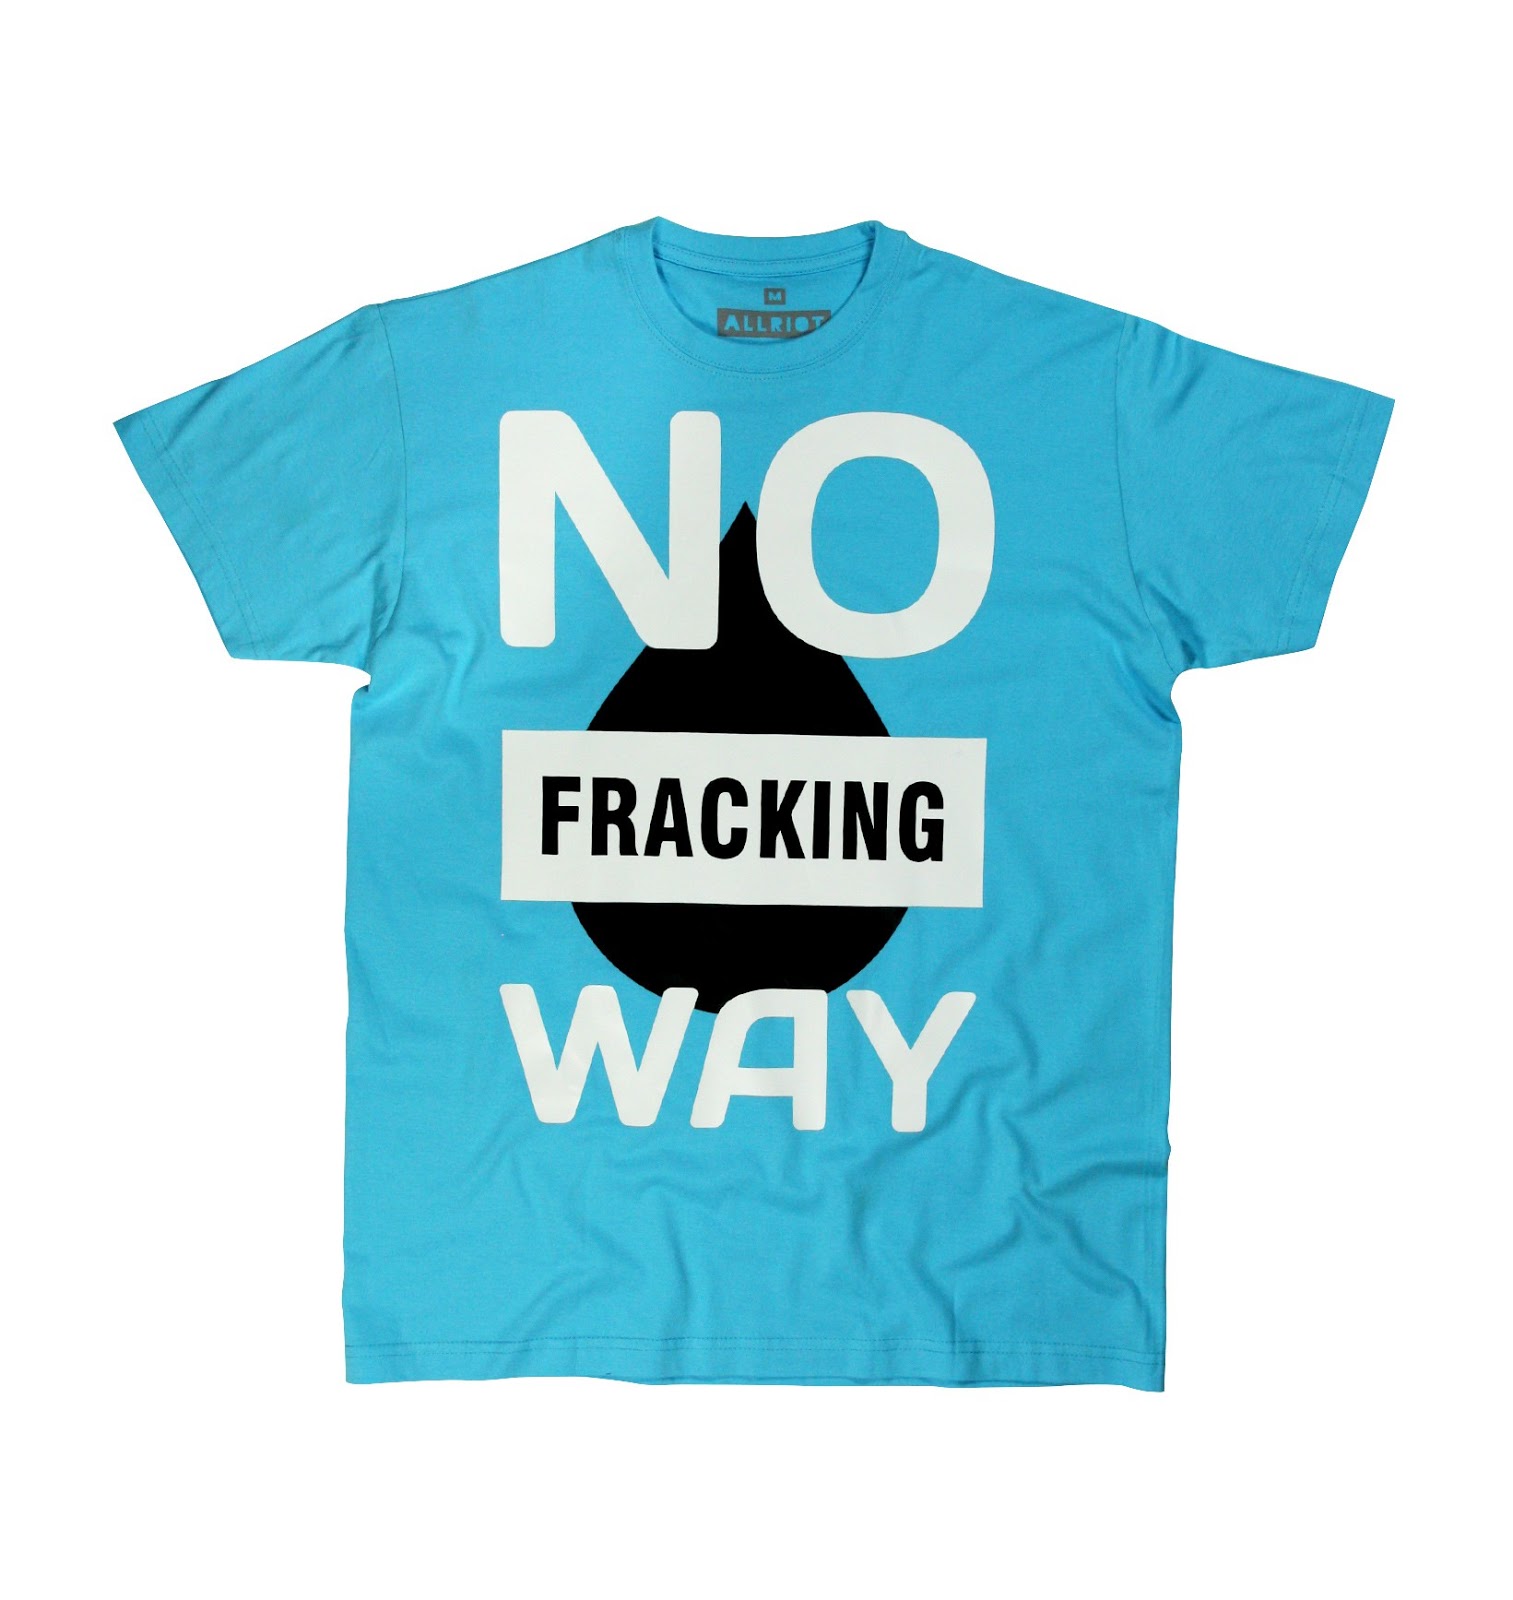 https://grafitee.es/s/camisetas/475-tee-shirt-no-fracking-way.html